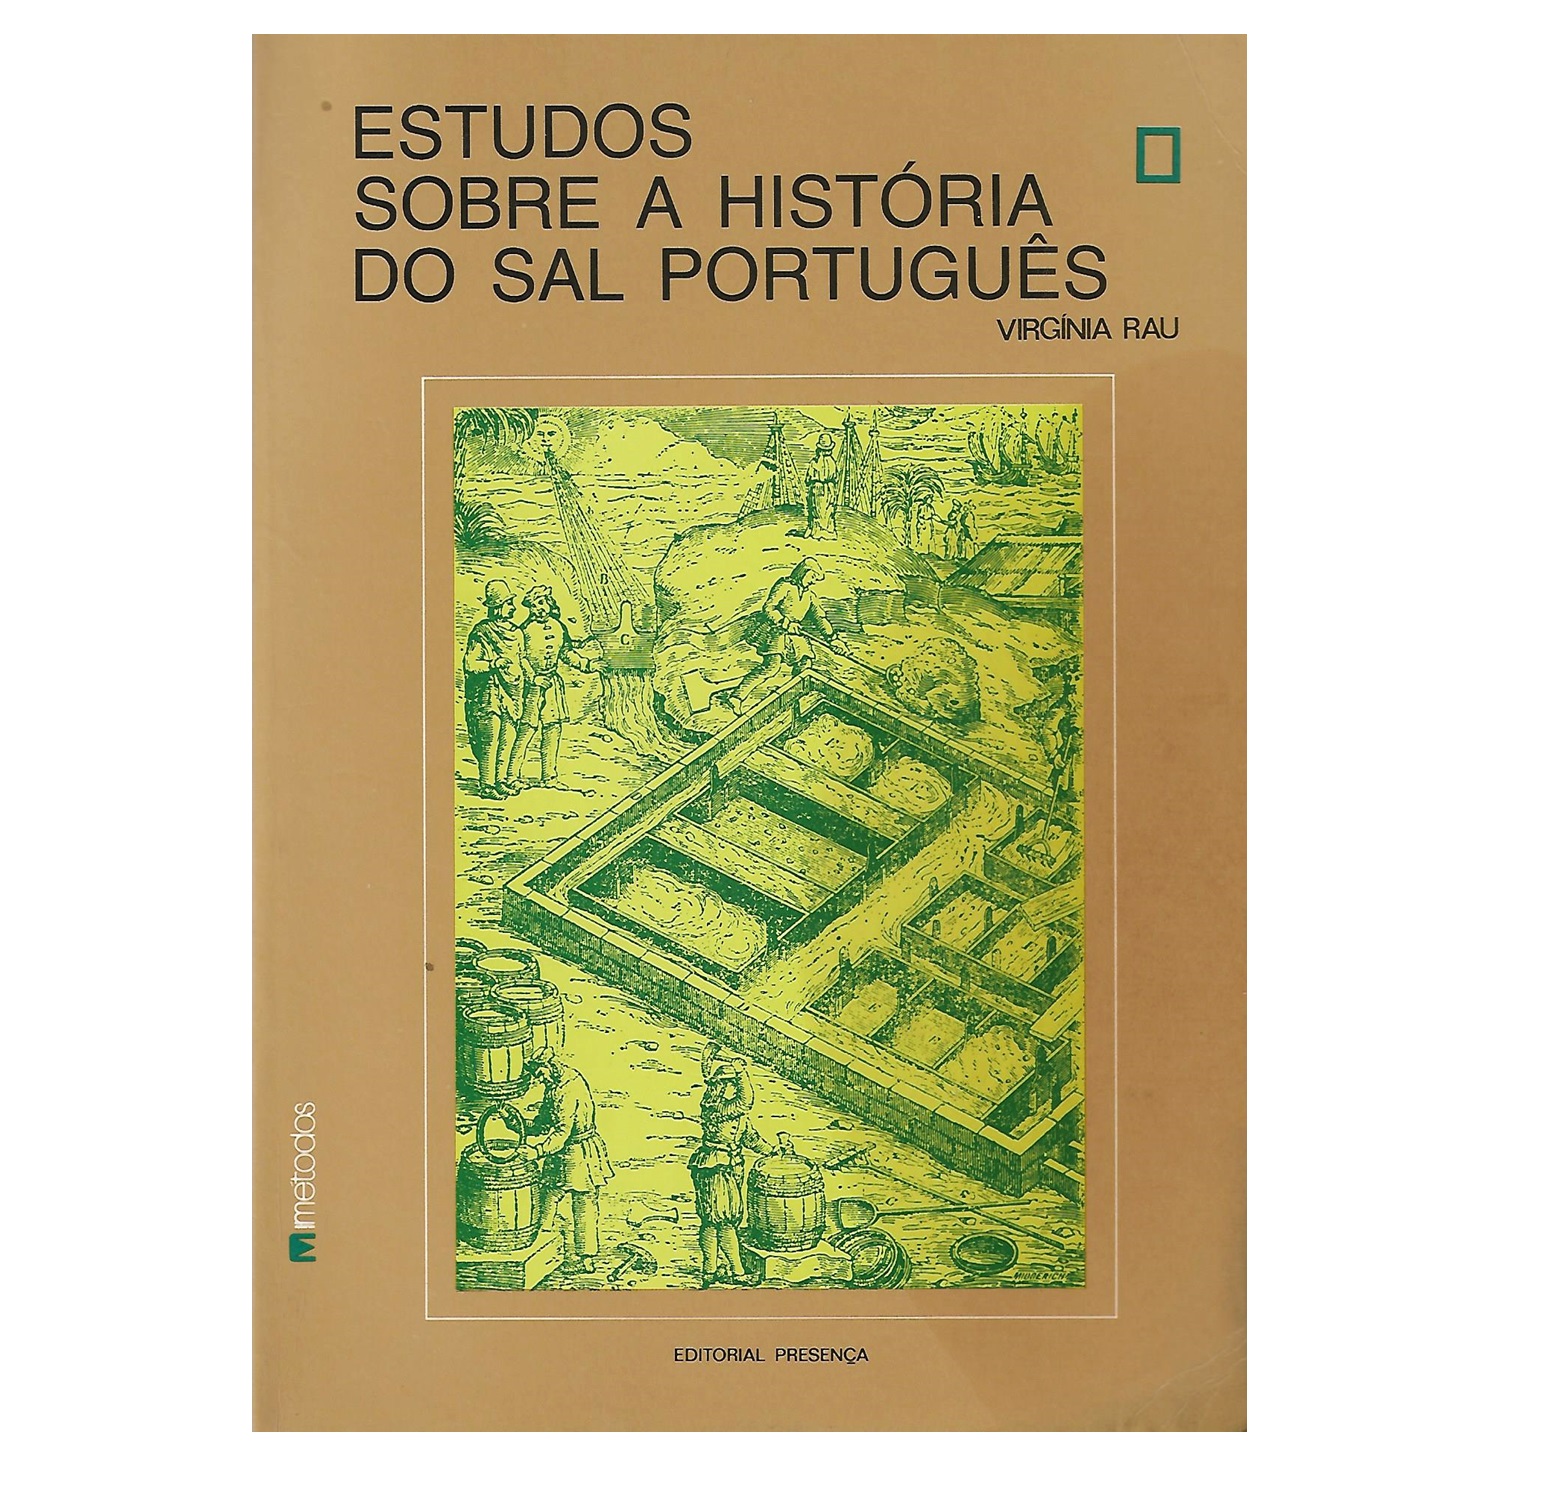 ESTUDOS SOBRE A HISTÓRIA DO SAL PORTUGUÊS